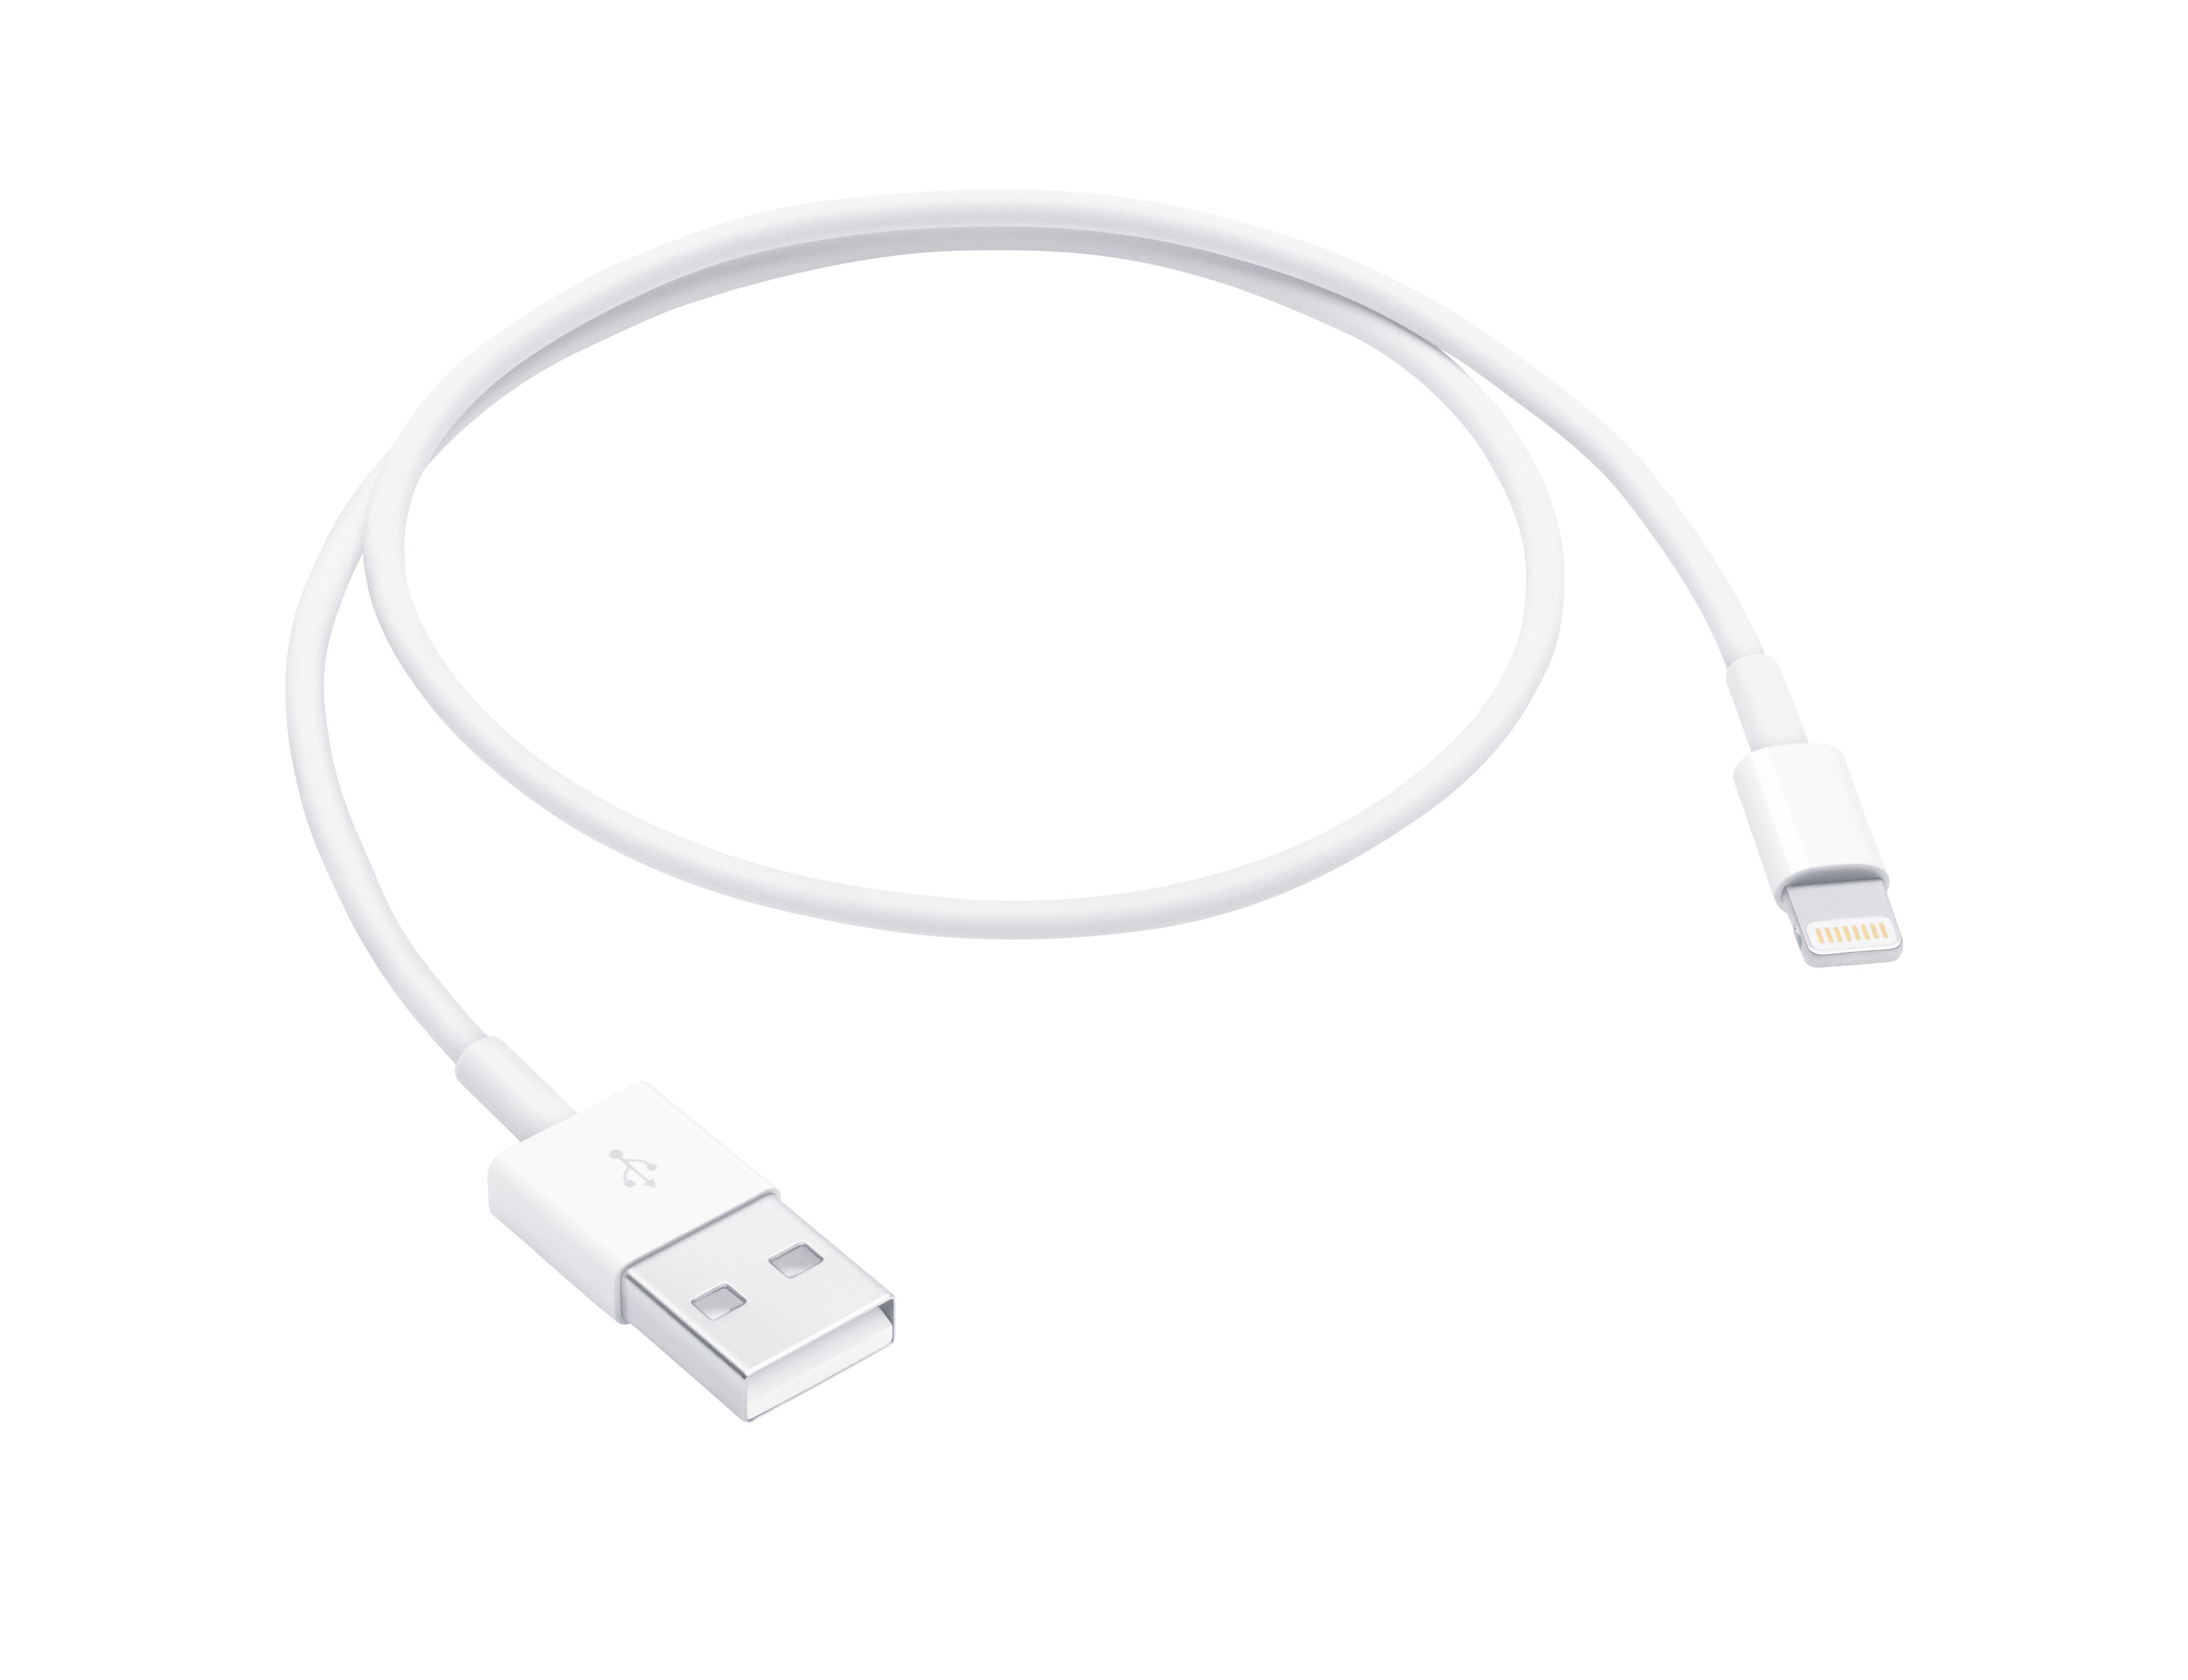 3 cargadores de iPhone: cables de iluminación a USB-A de 3,3 pies para iPhones, iPads, AirPods y más.